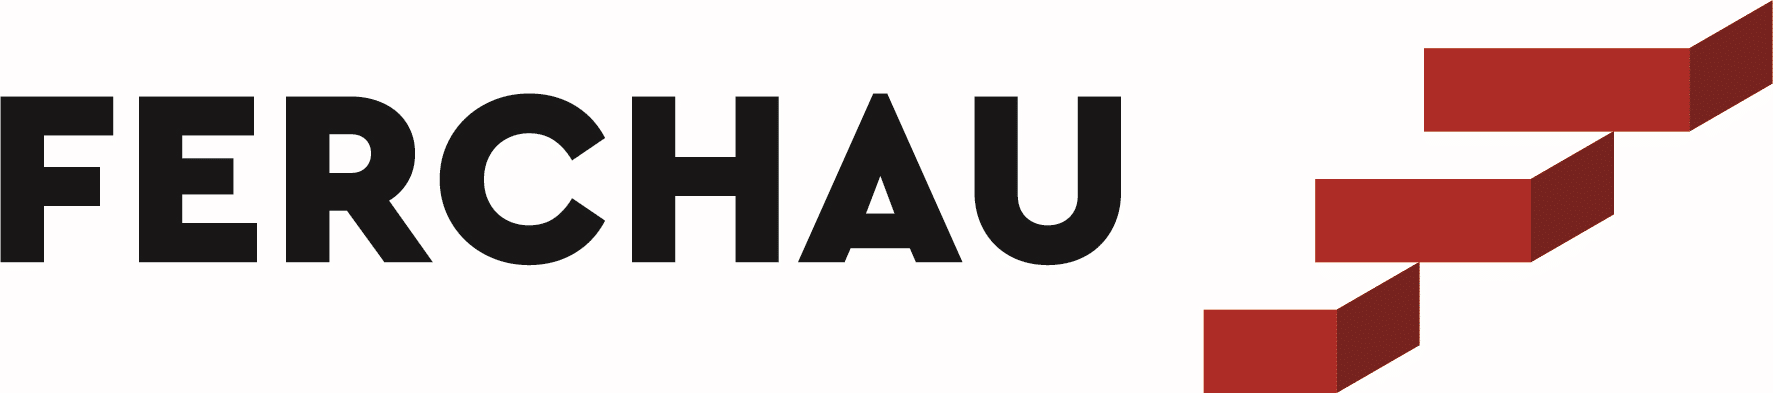 FERCHAU Logo - Alle Mitglieder